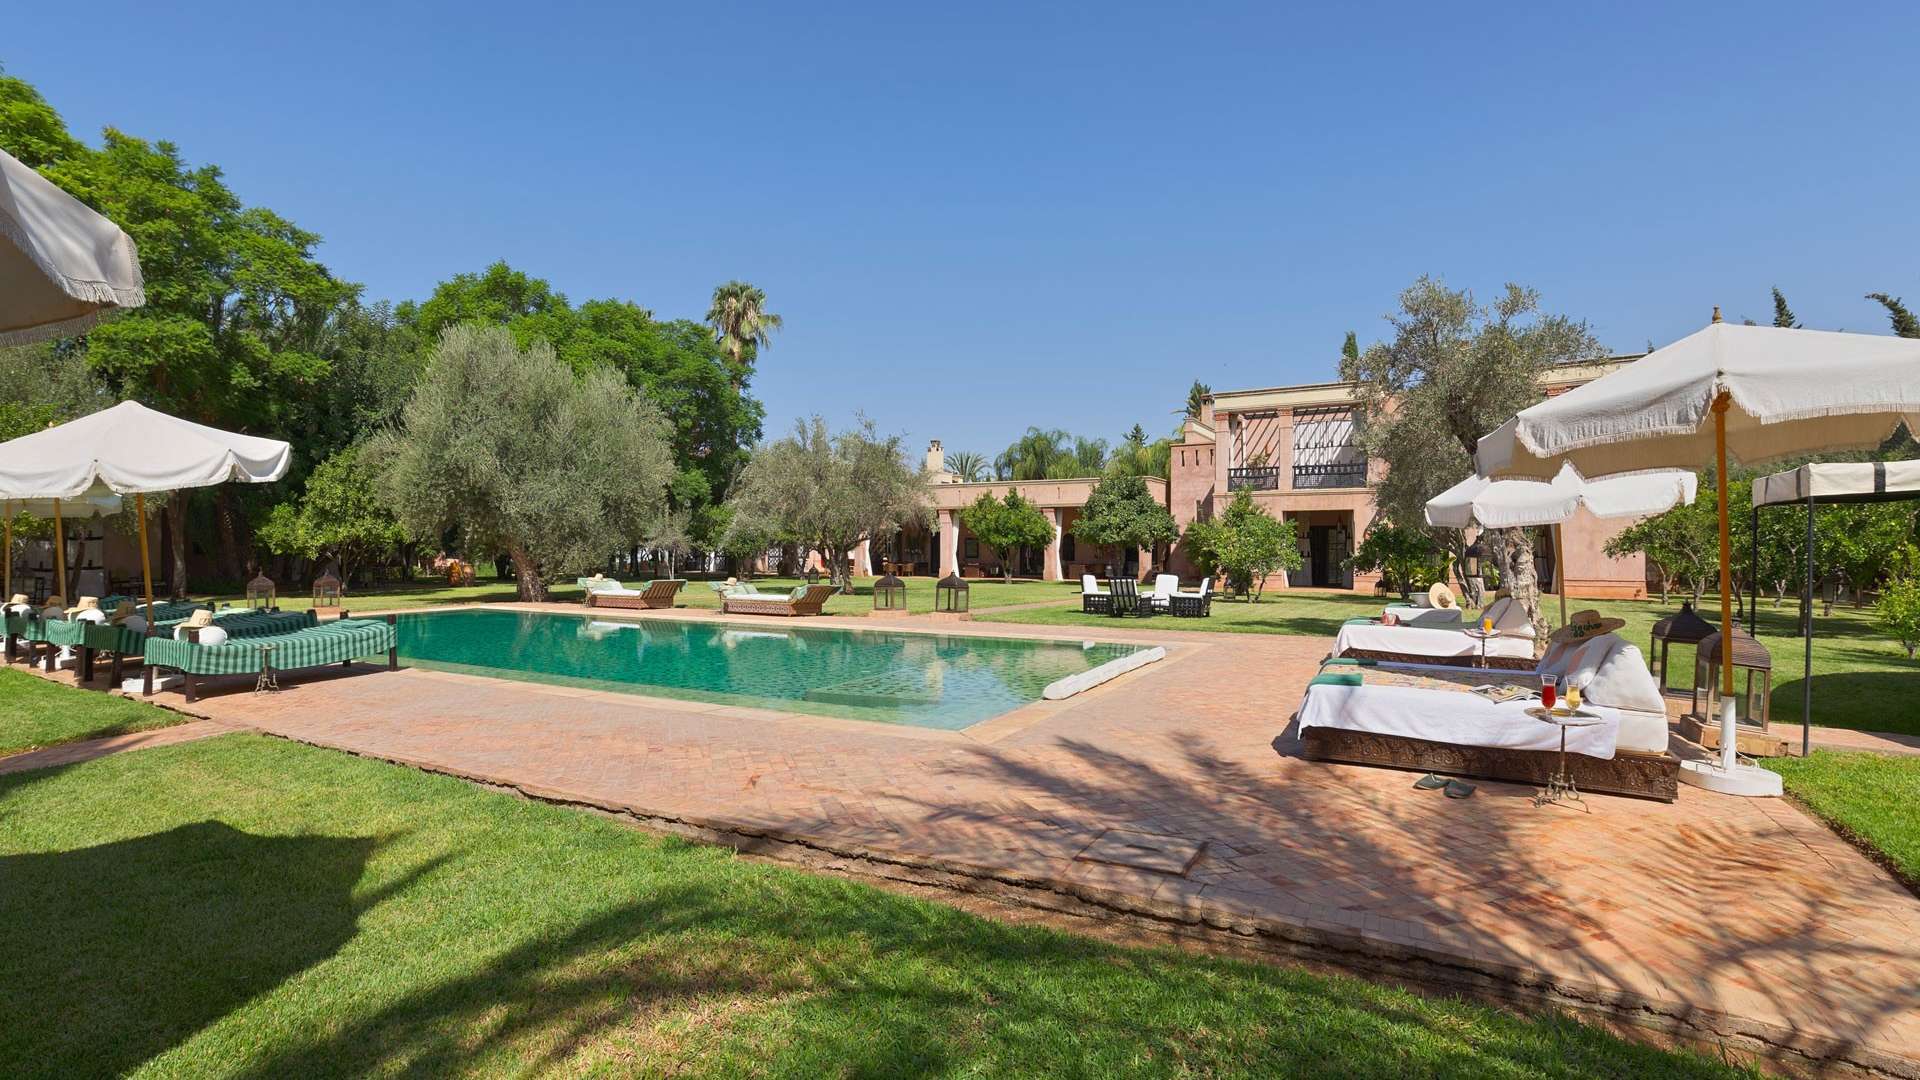 Location de vacances,Villa,Propriété privée de luxe avec 7 suites d’exception, services hôteliers, tennis, spa,…,Marrakech,Palmeraie